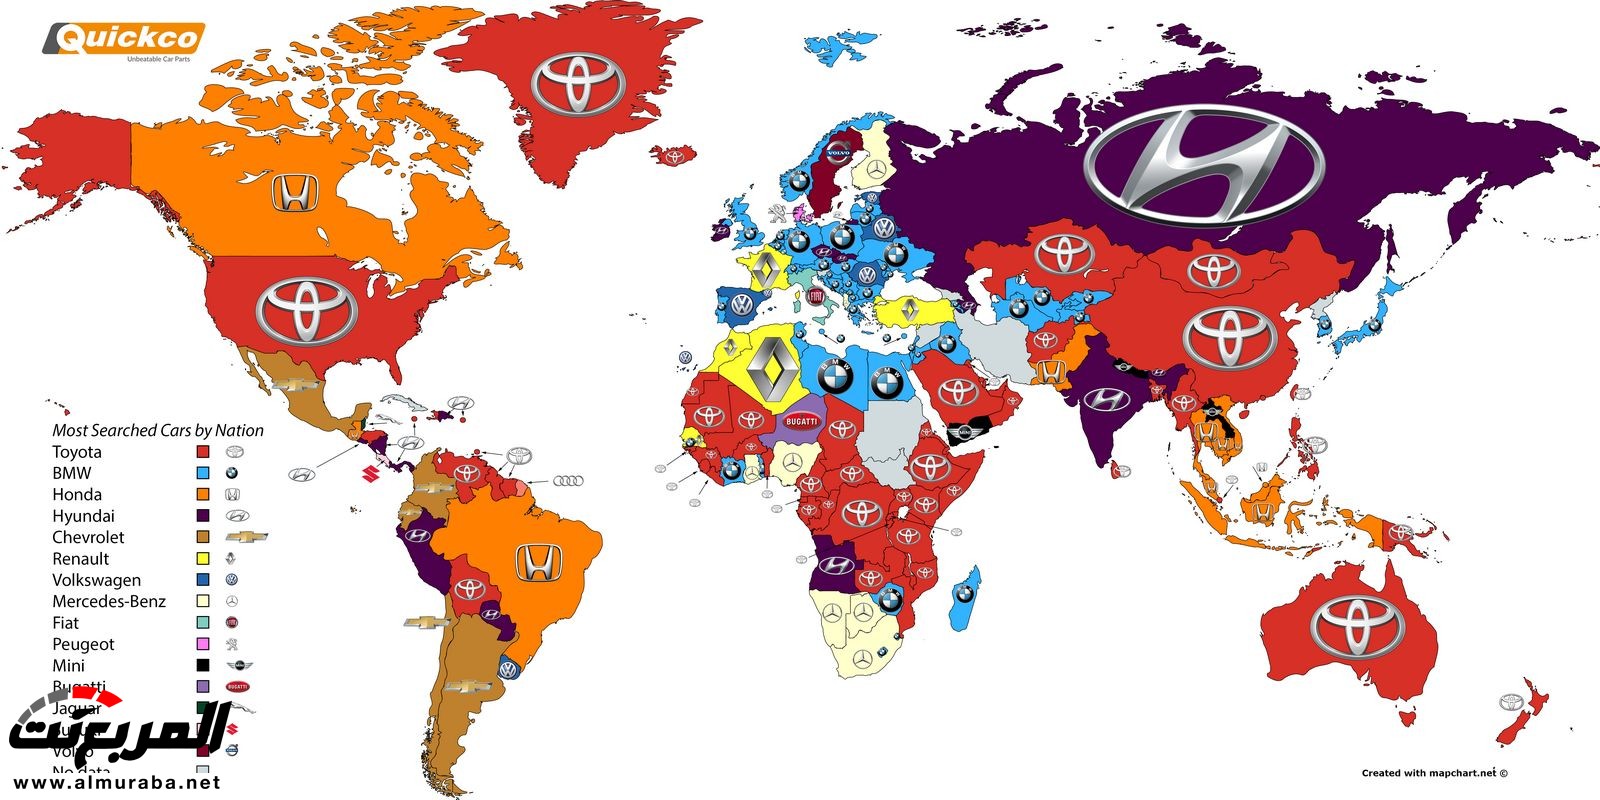 خارطة تبين أكثر علامات السيارات التجارية بحثا بدول العالم 5